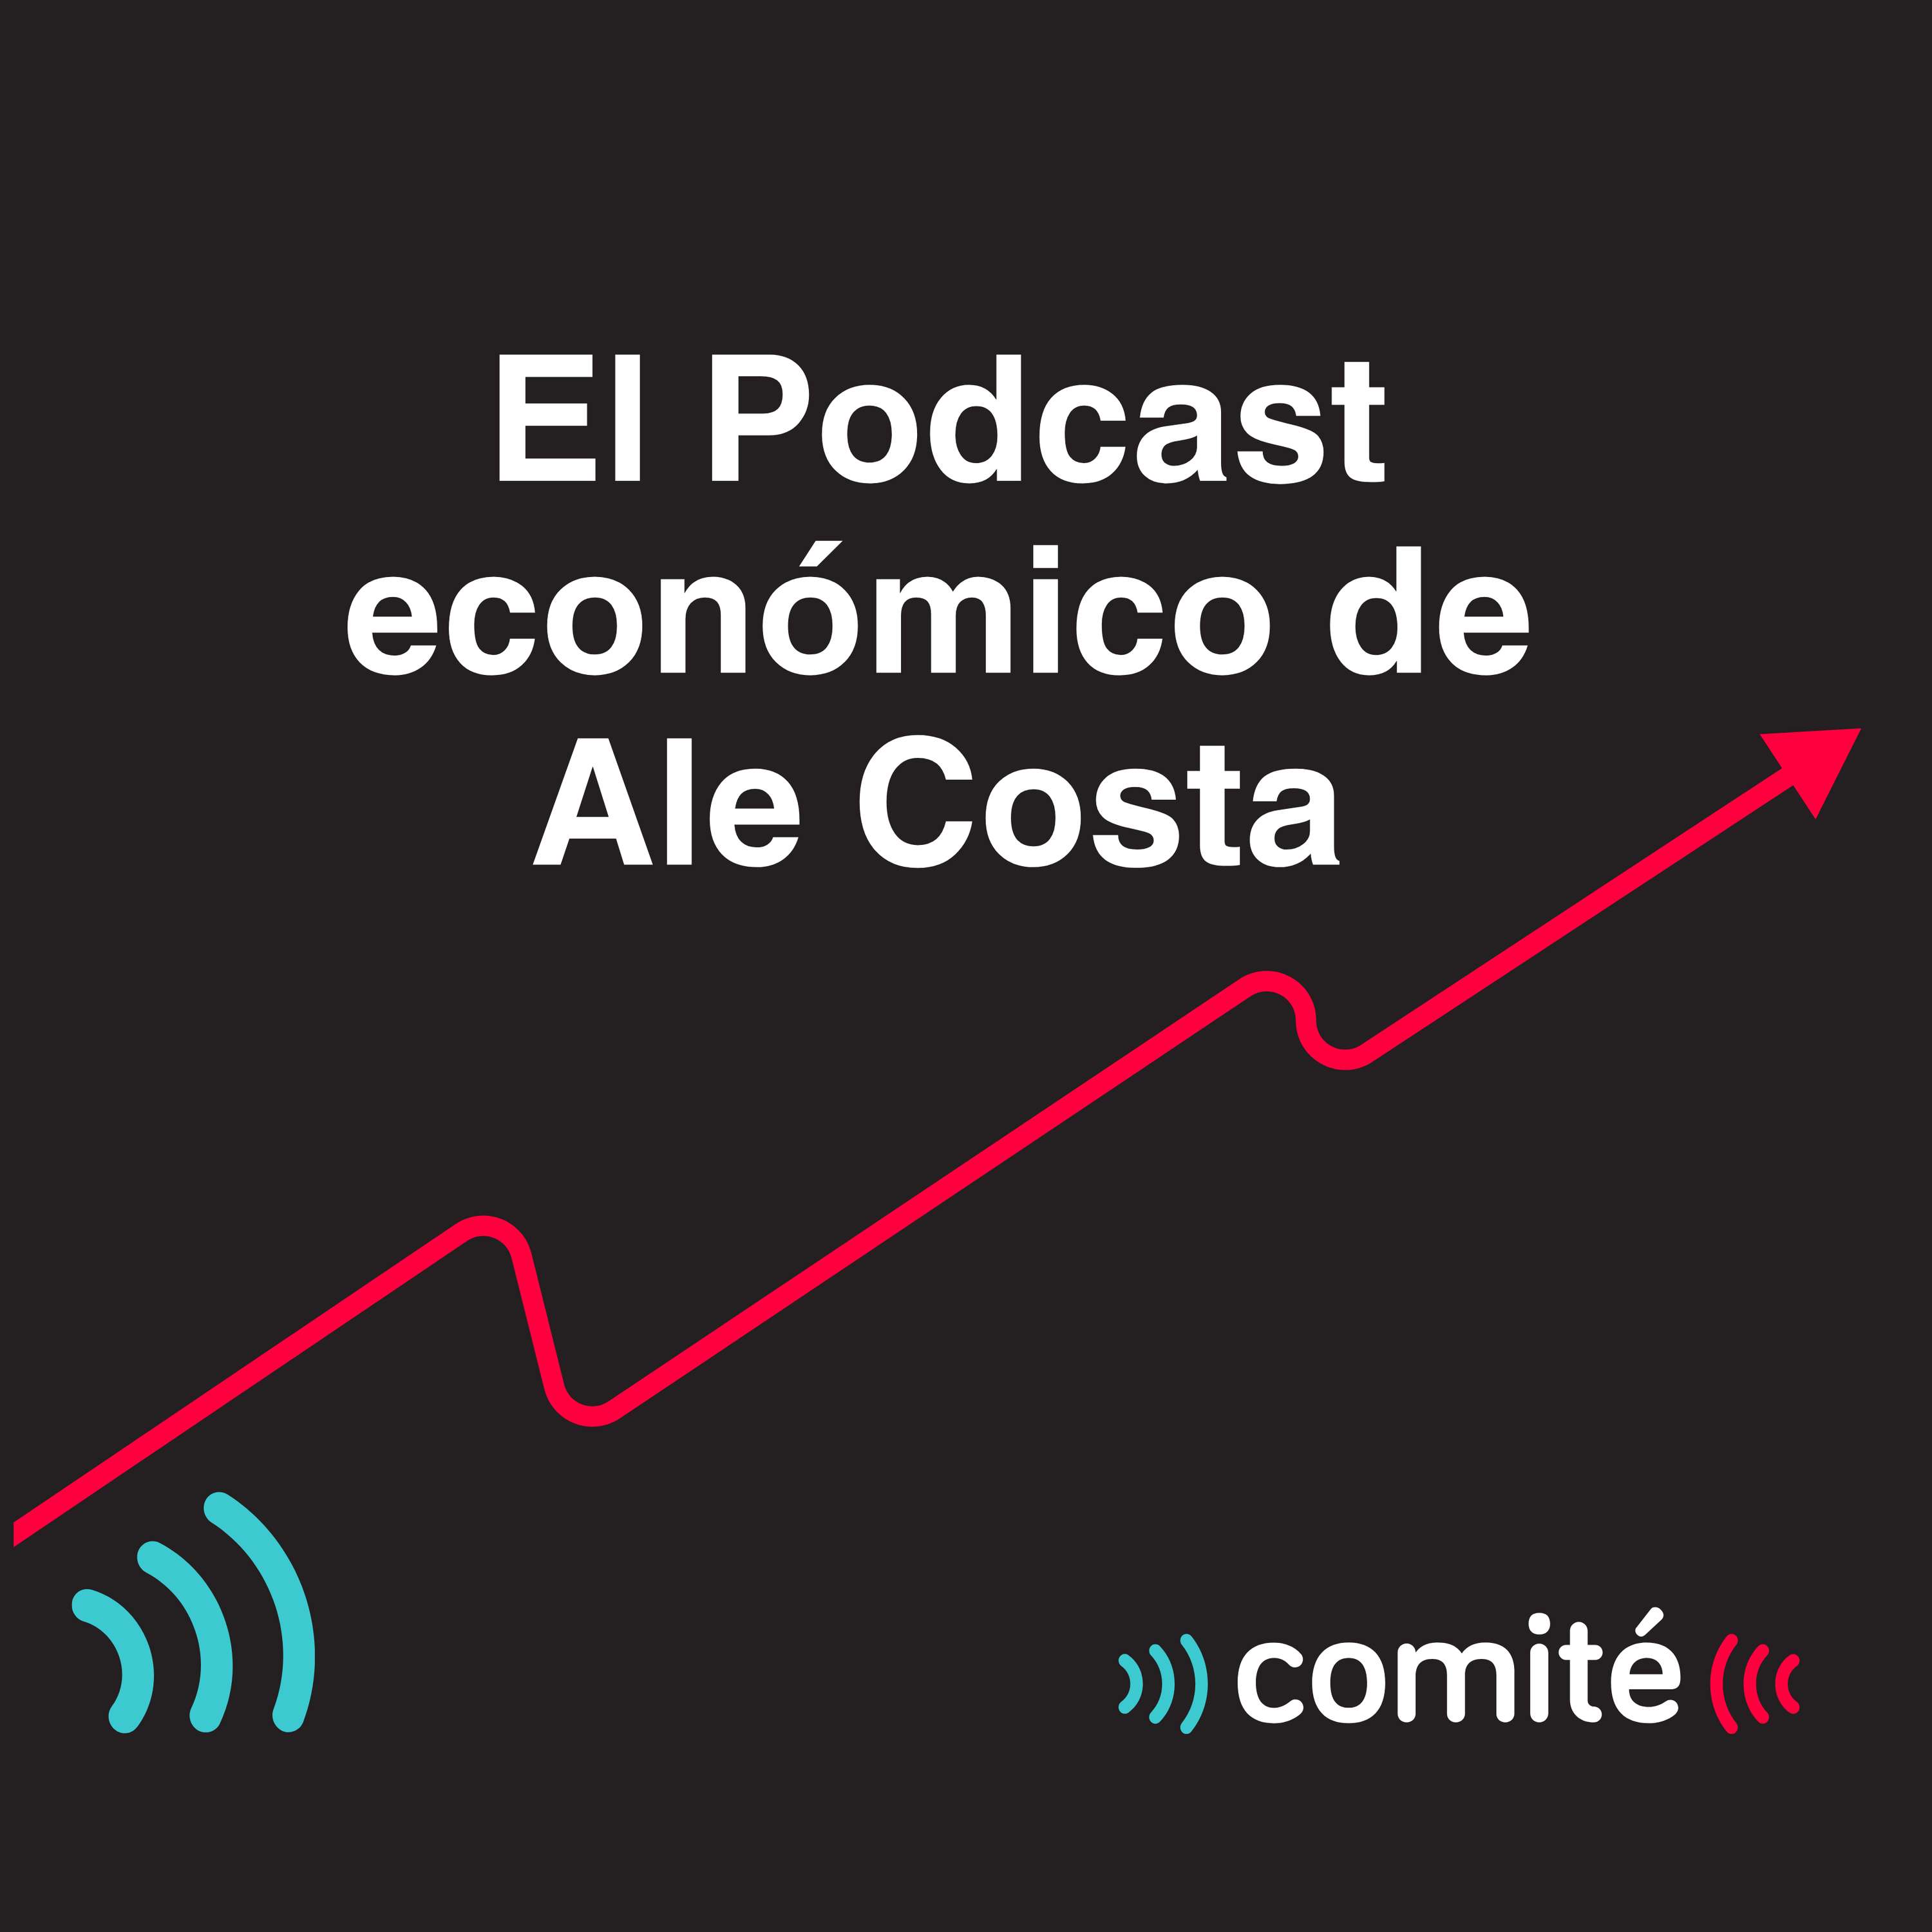 El traspaso de malls de Falabella y el rebote del PBI en febrero | El Podcast económico de Ale Costa